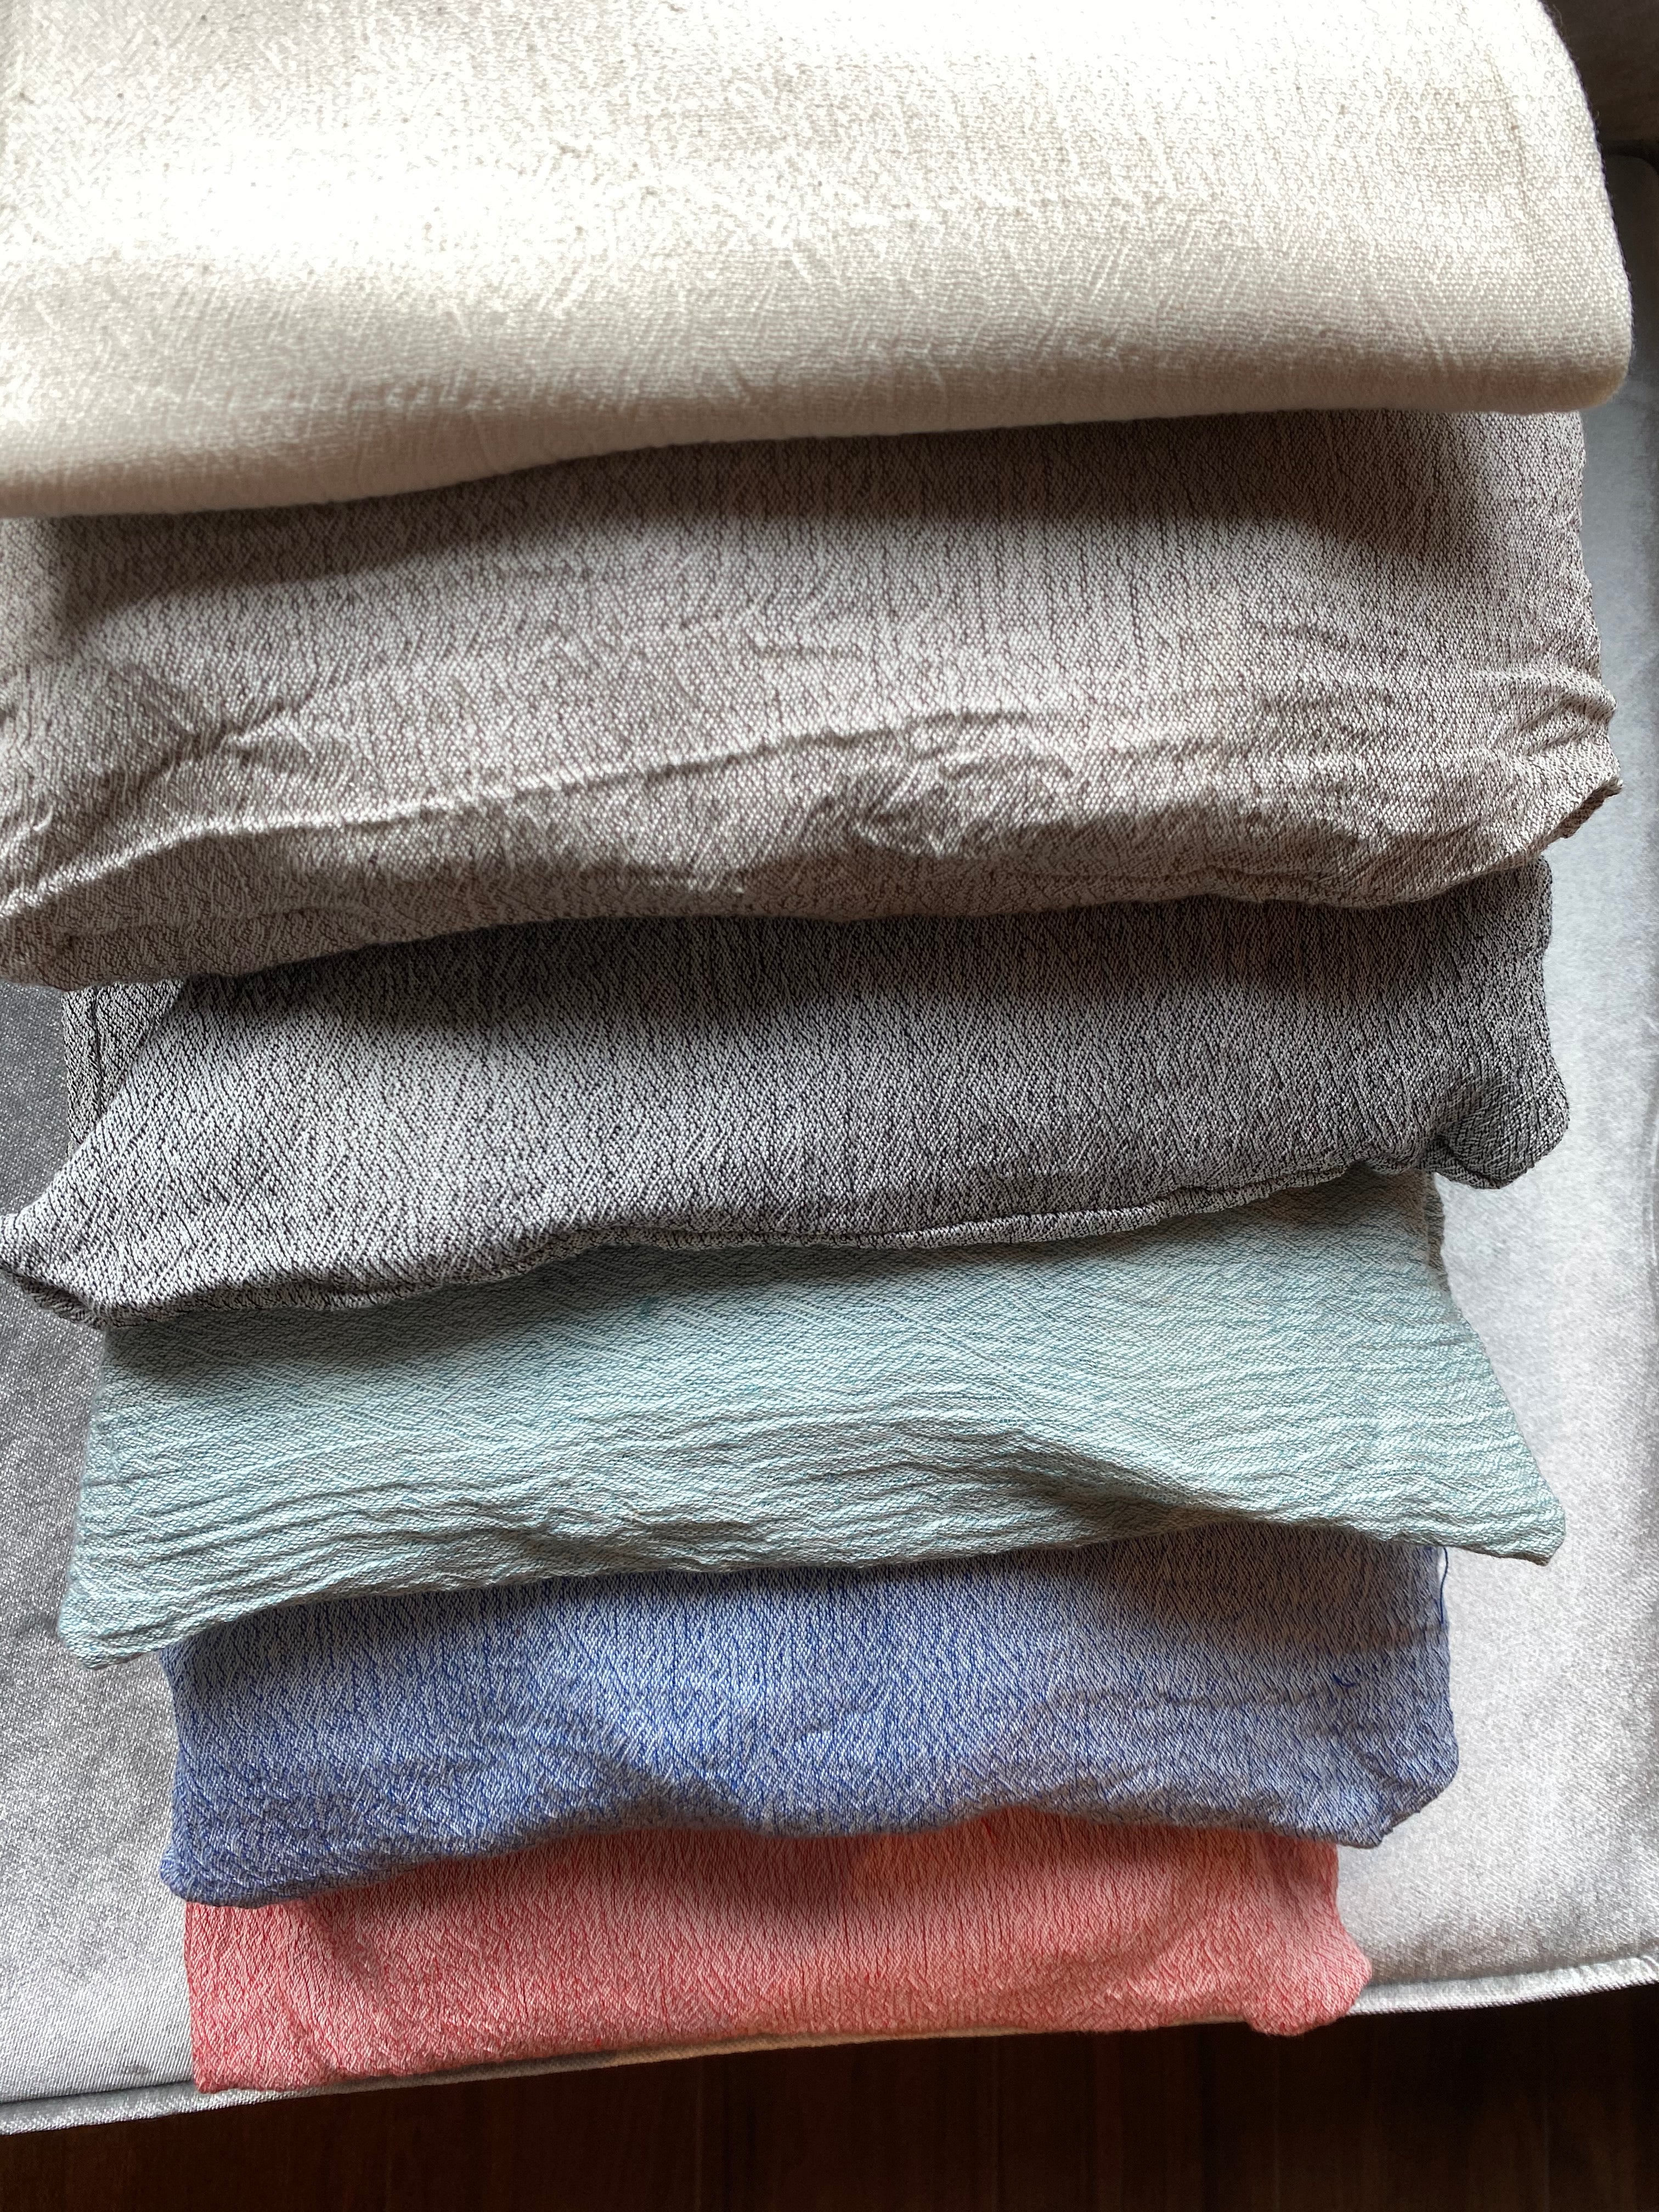 100% Cotton Sile Cloth 7 Pieces Lacy Duvet Cover Set